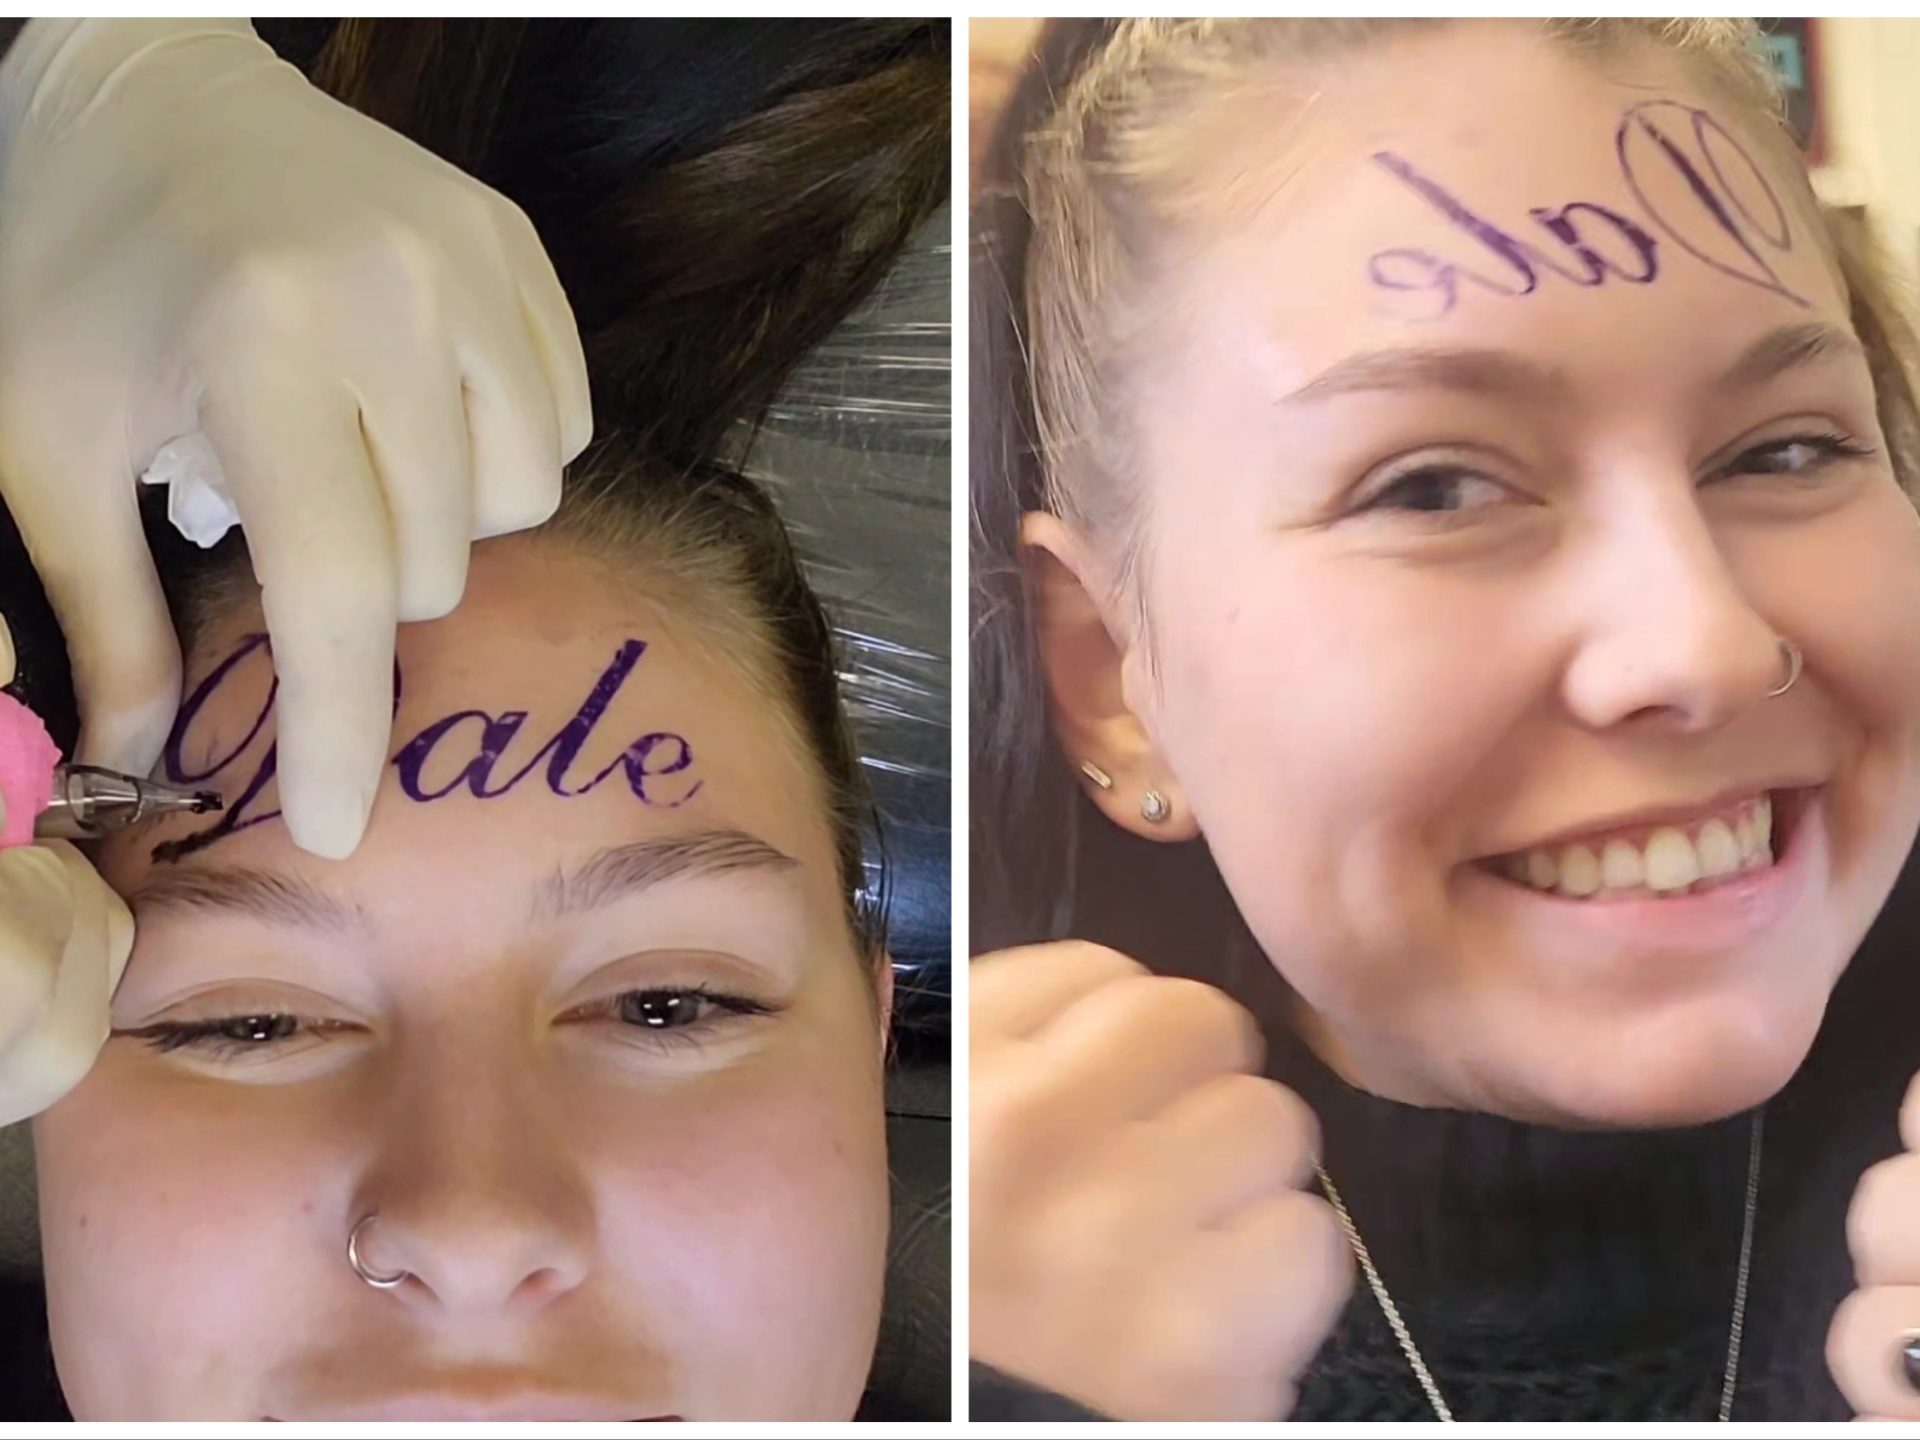 Mädchen lässt sich den Namen ihres Freundes auf die Stirn tätowieren (zeigt aber tatsächlich das Make-up)